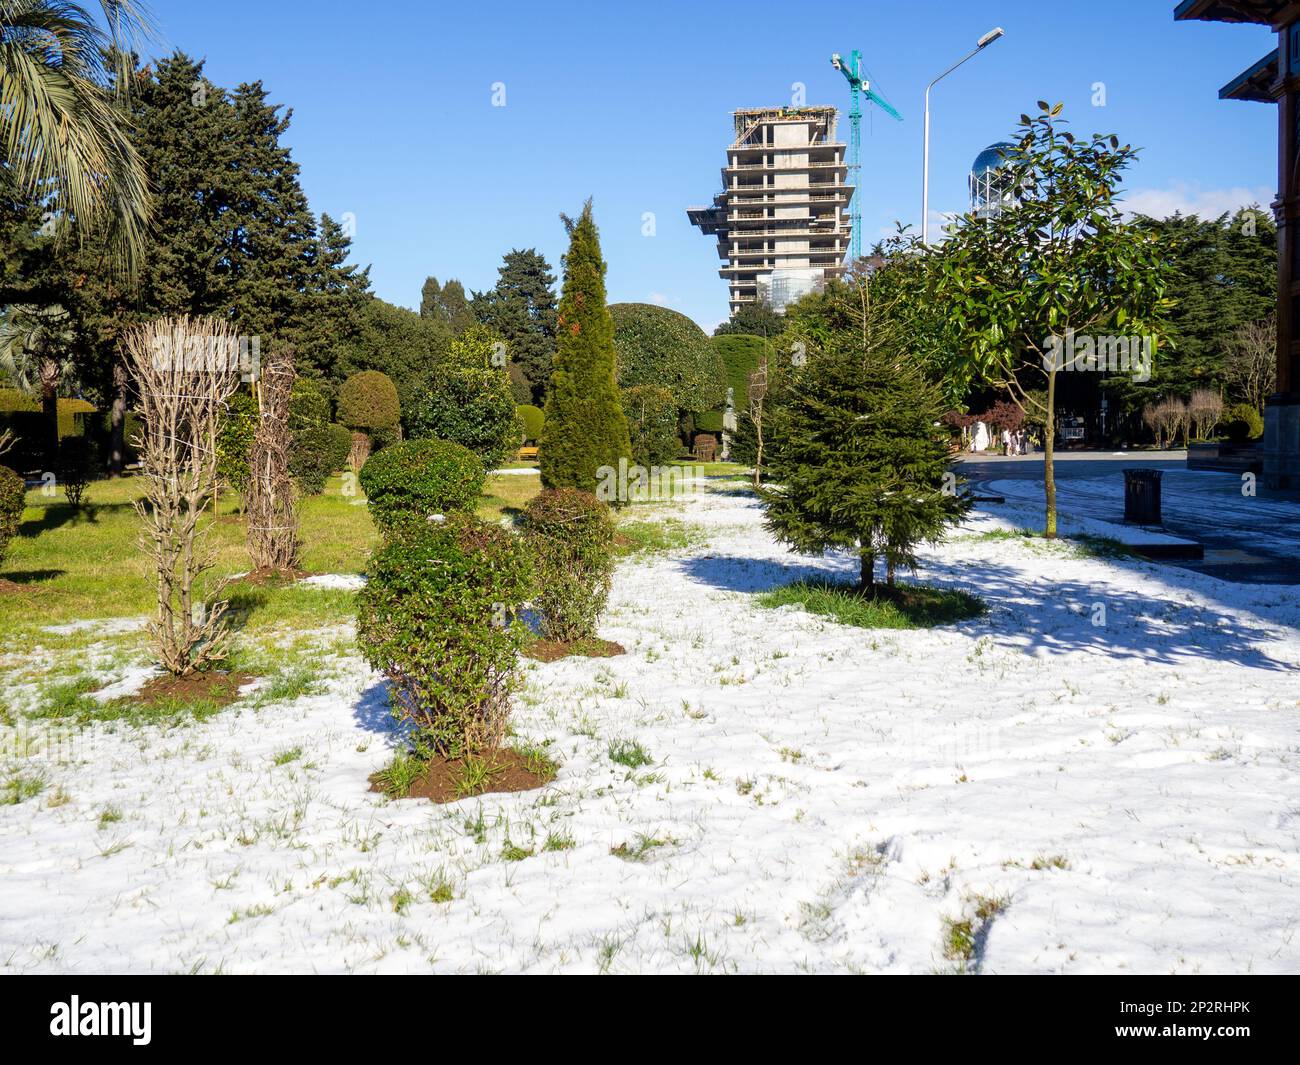 Neige sur un palmier et sur l'herbe verte. Hiver à Batumi. L'hiver dans le parc de la station de la ville du sud. Chute soudaine de neige. Contraste Banque D'Images